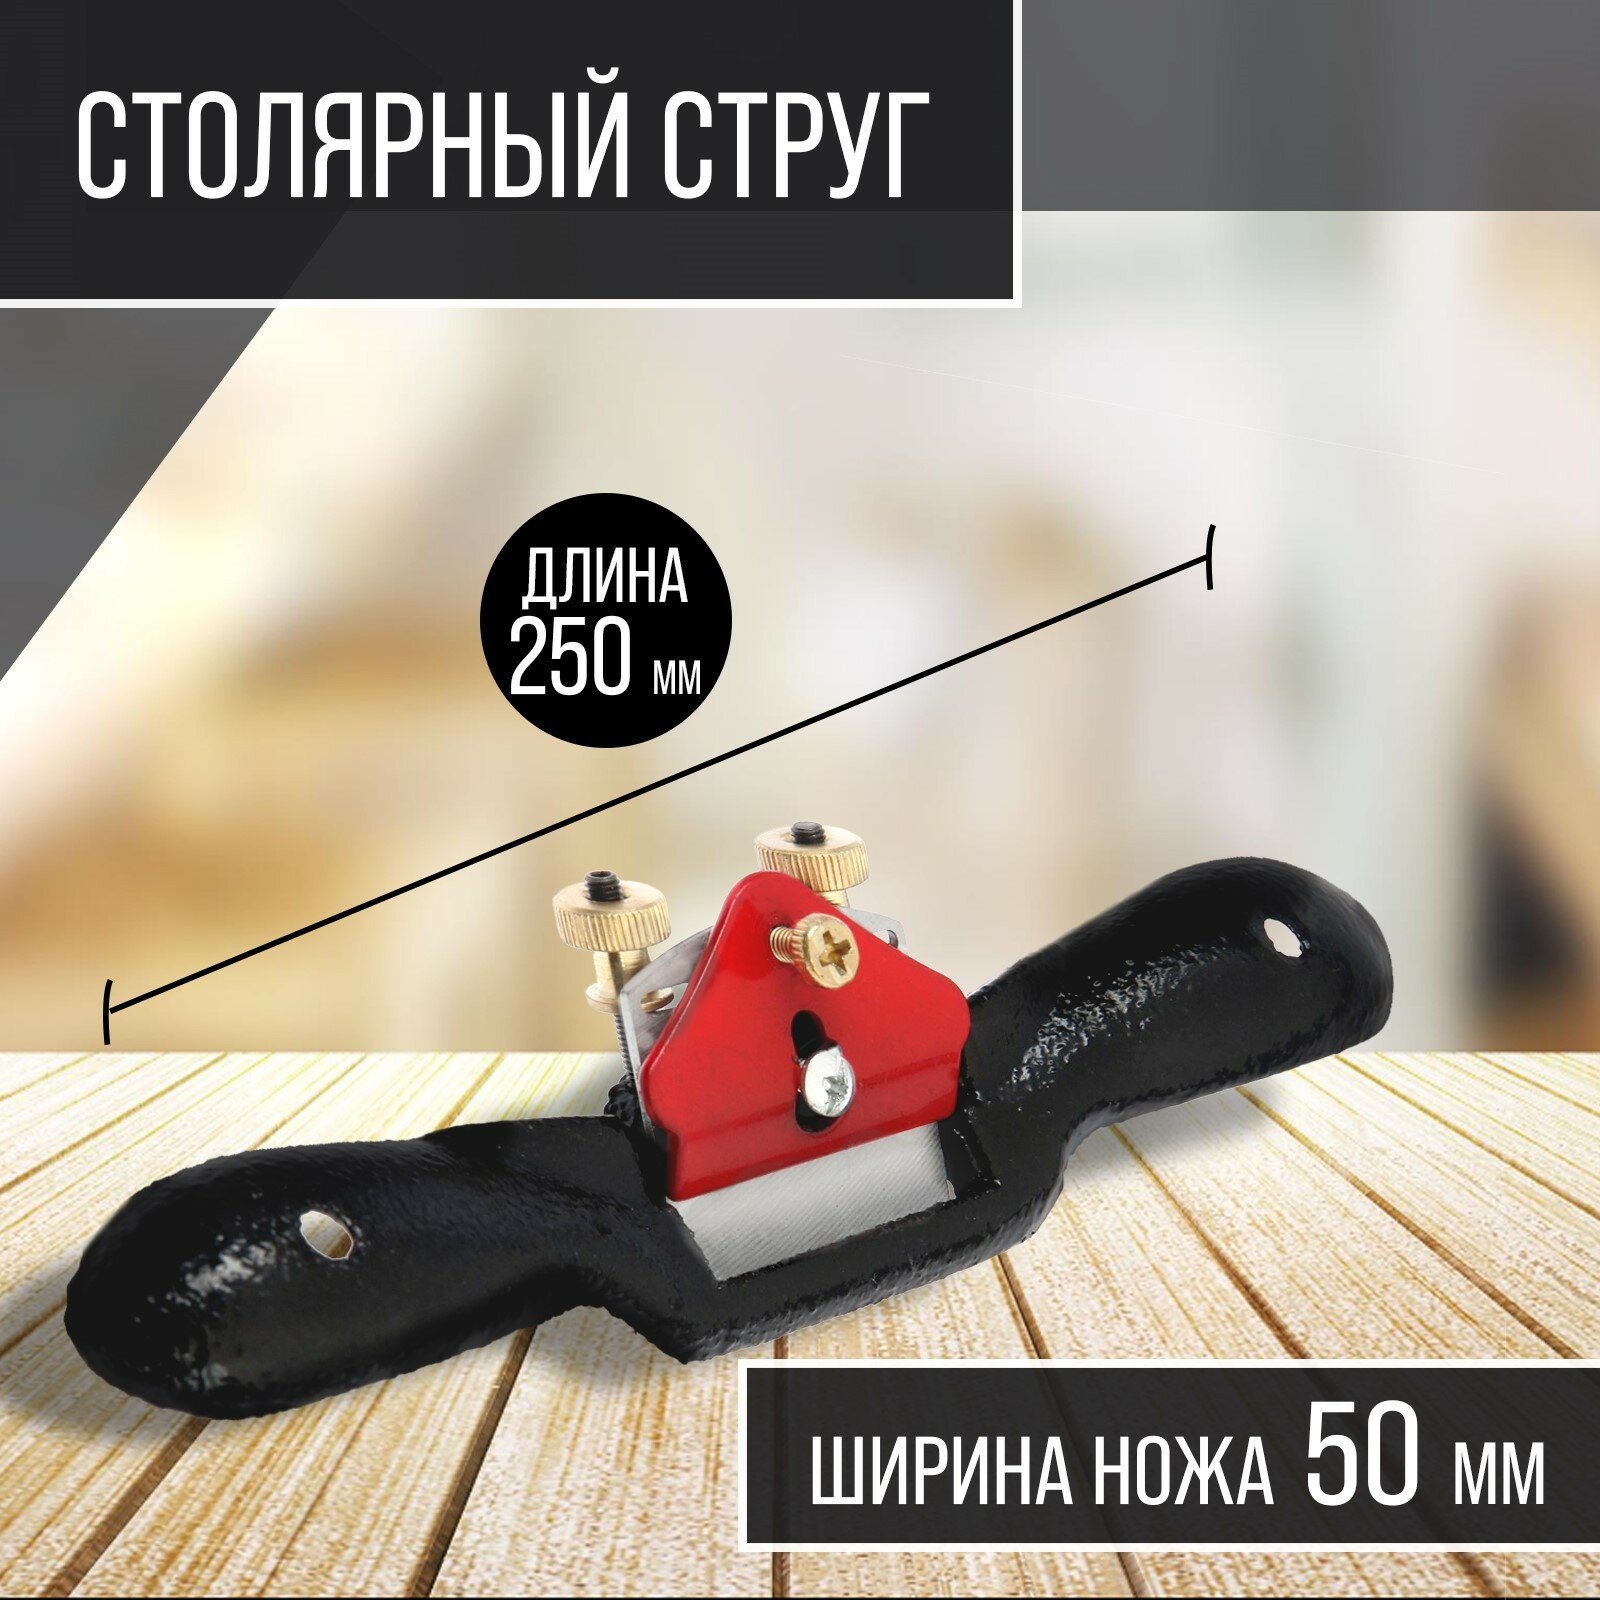 Столярный струг тундра, одинарный регулируемый нож, 250 х 50 мм (1шт.)